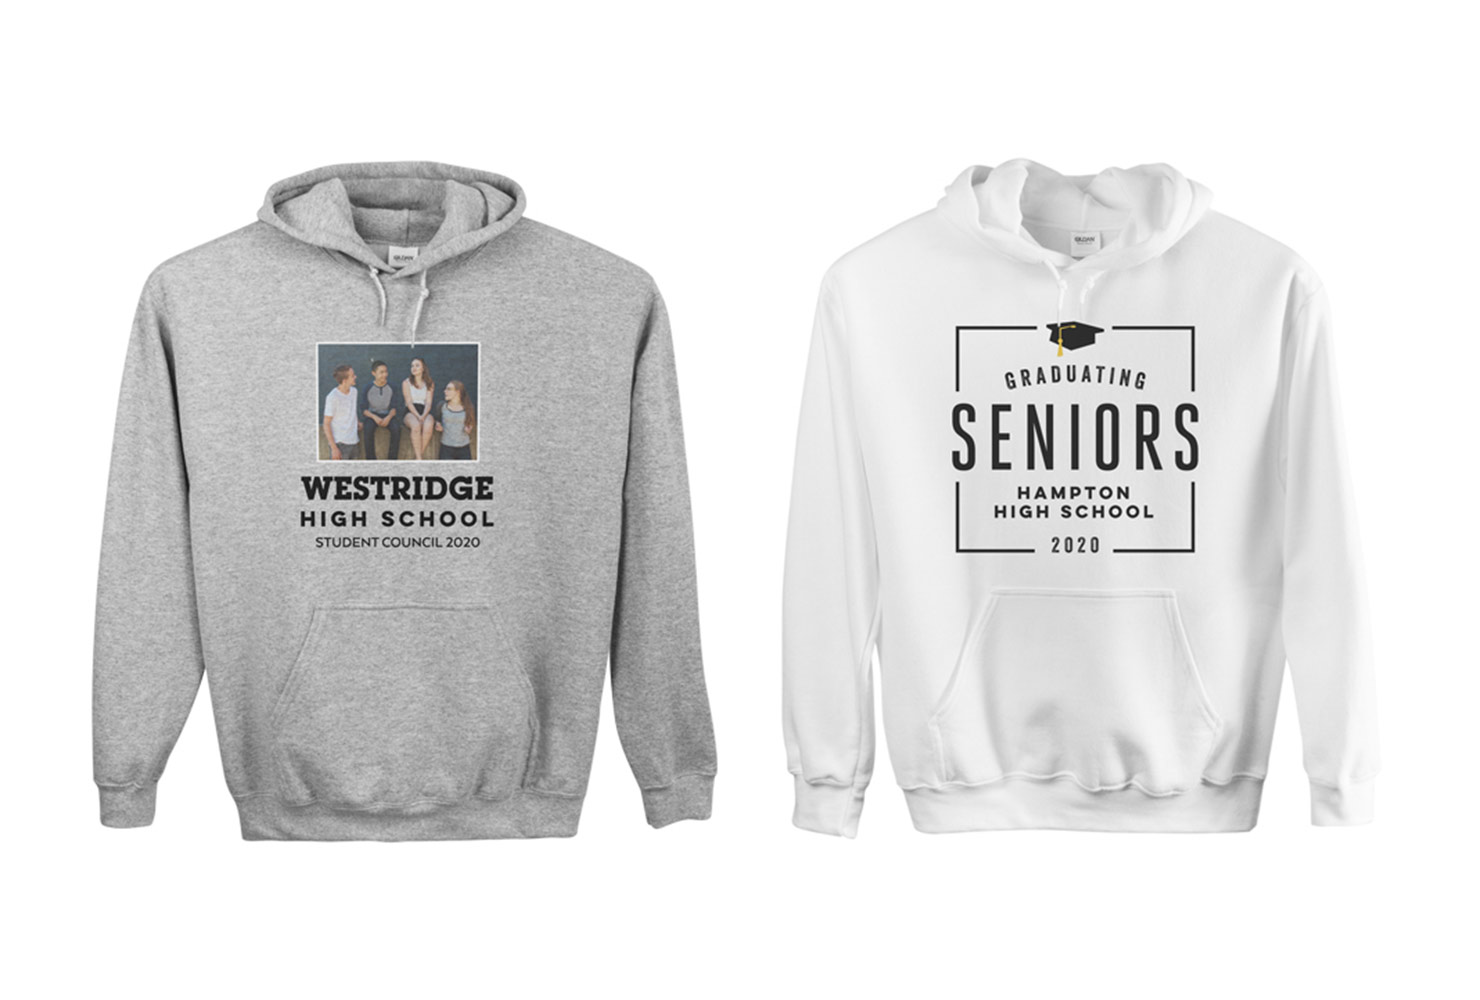 High school sweatshirts.